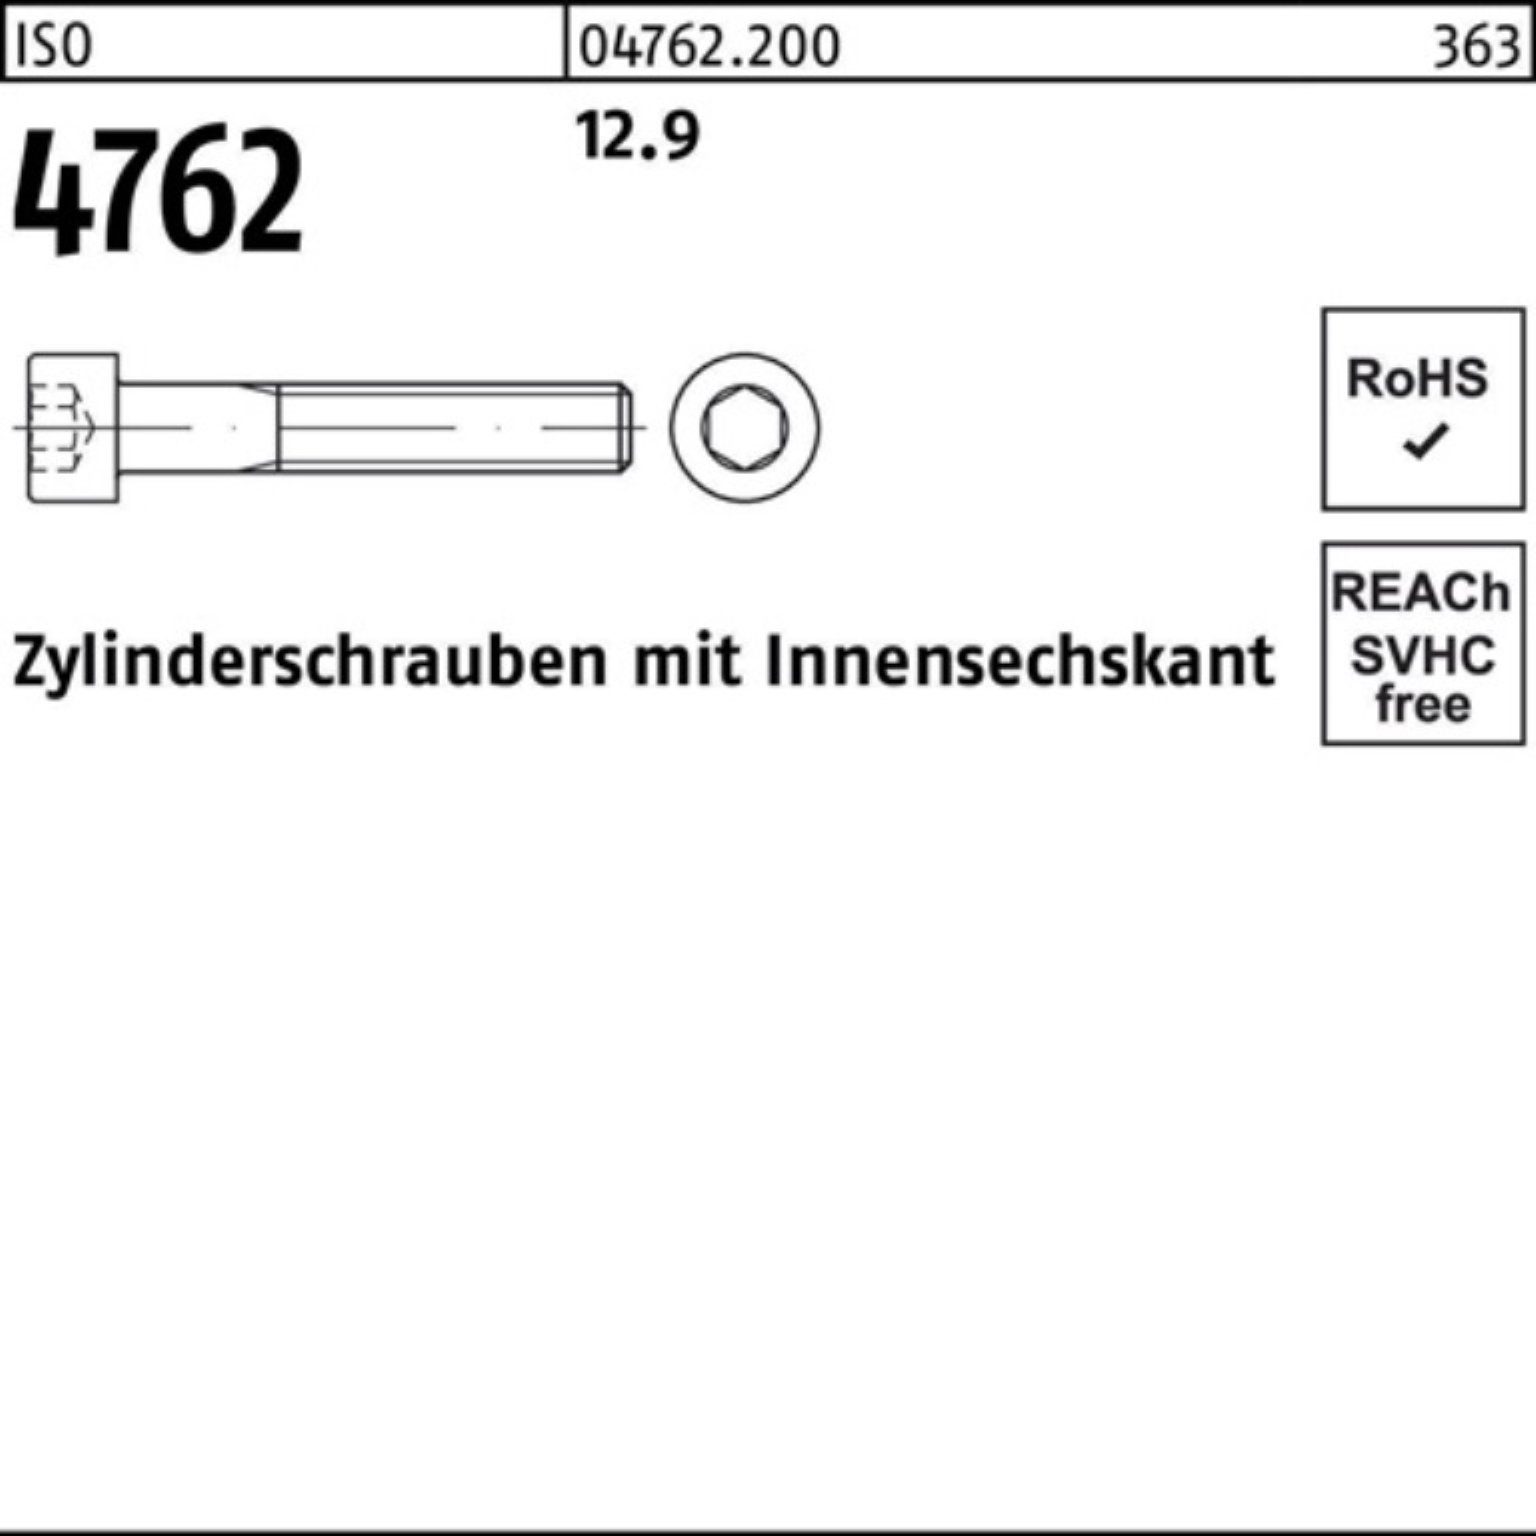 Innen-6kt 30 Pack 100 Zylinderschraube Zylinderschraube M5x Reyher 4762 100er 12.9 ISO Stück